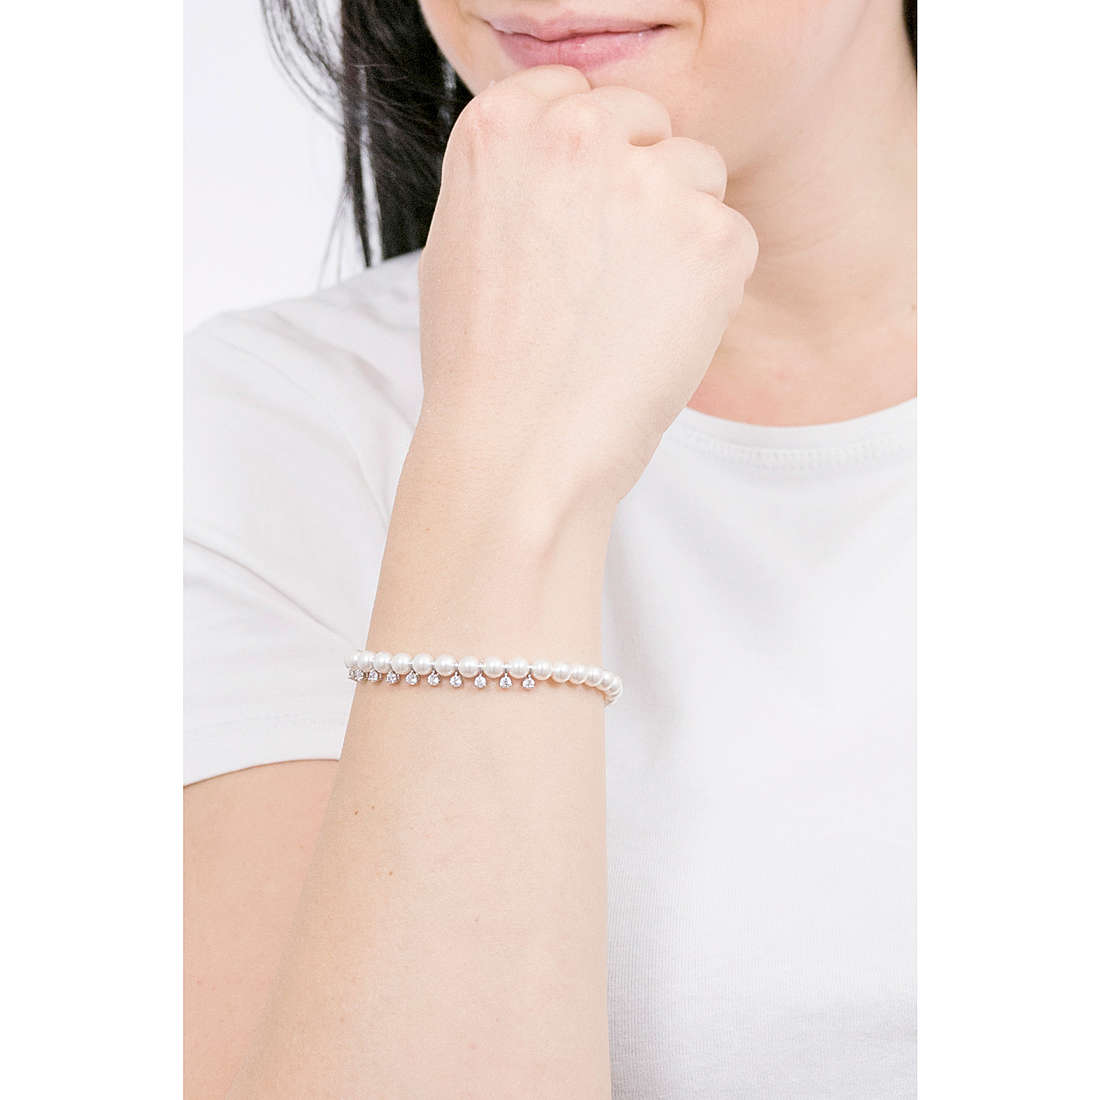 Swarovski bracelets Treasure woman 5572683 wearing